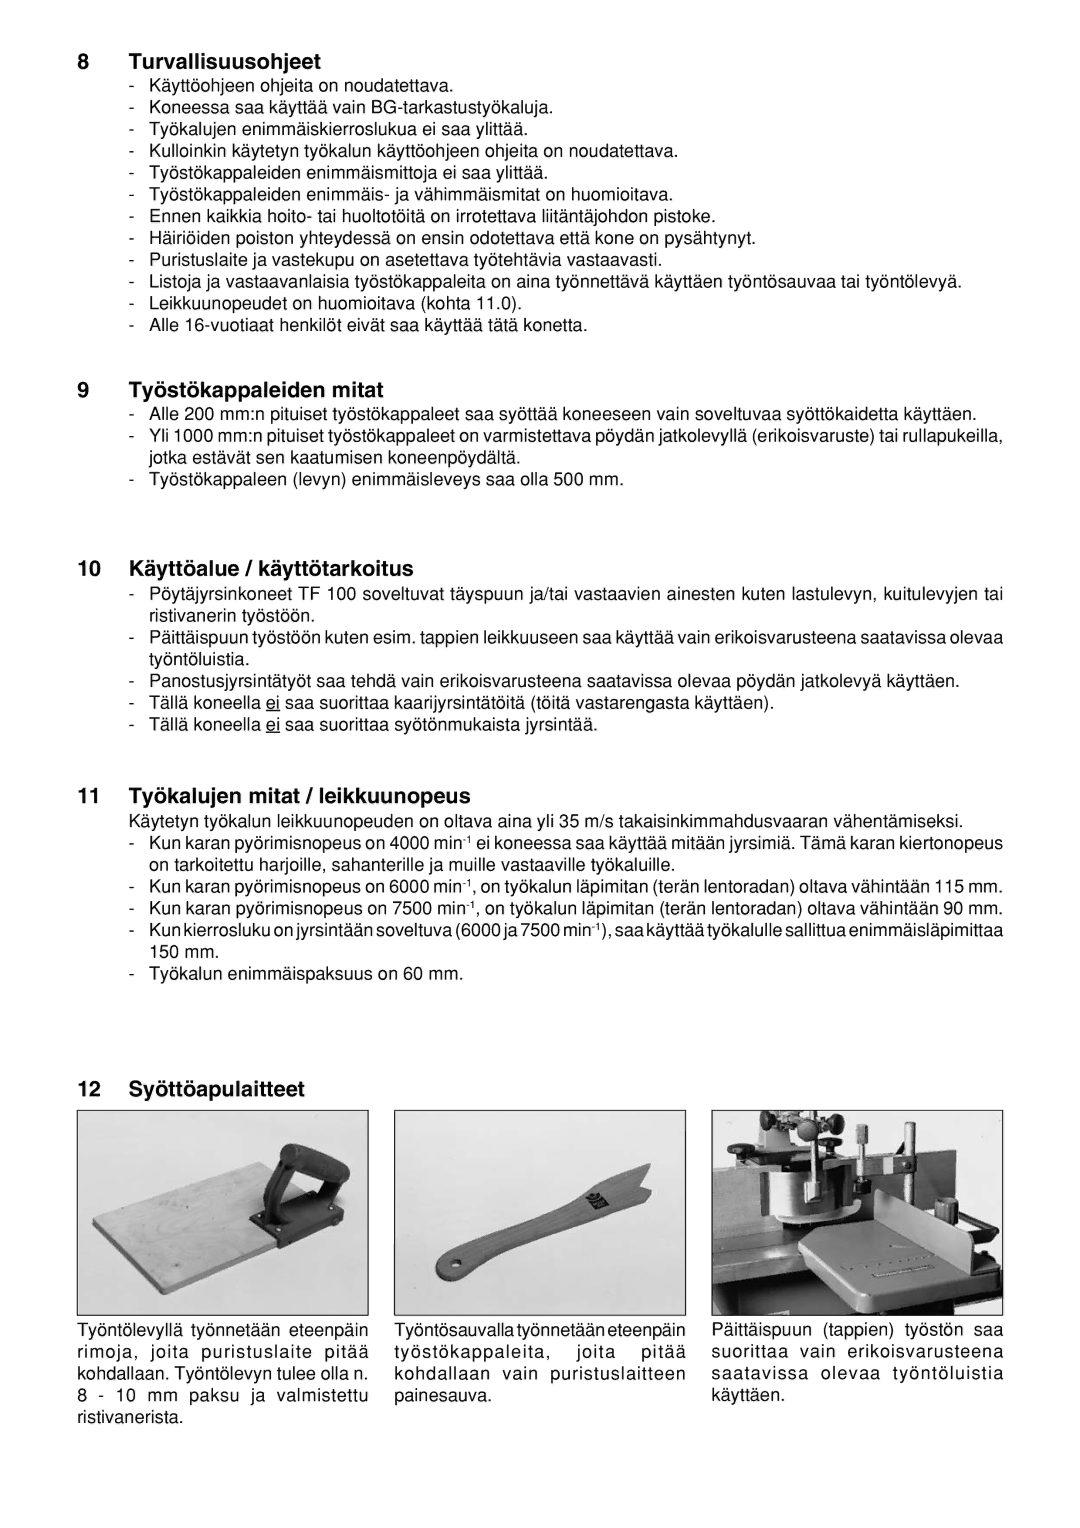 Elektra Beckum TF 100 M Turvallisuusohjeet, Työstökappaleiden mitat, 10 Käyttöalue / käyttötarkoitus, 12 Syöttöapulaitteet 